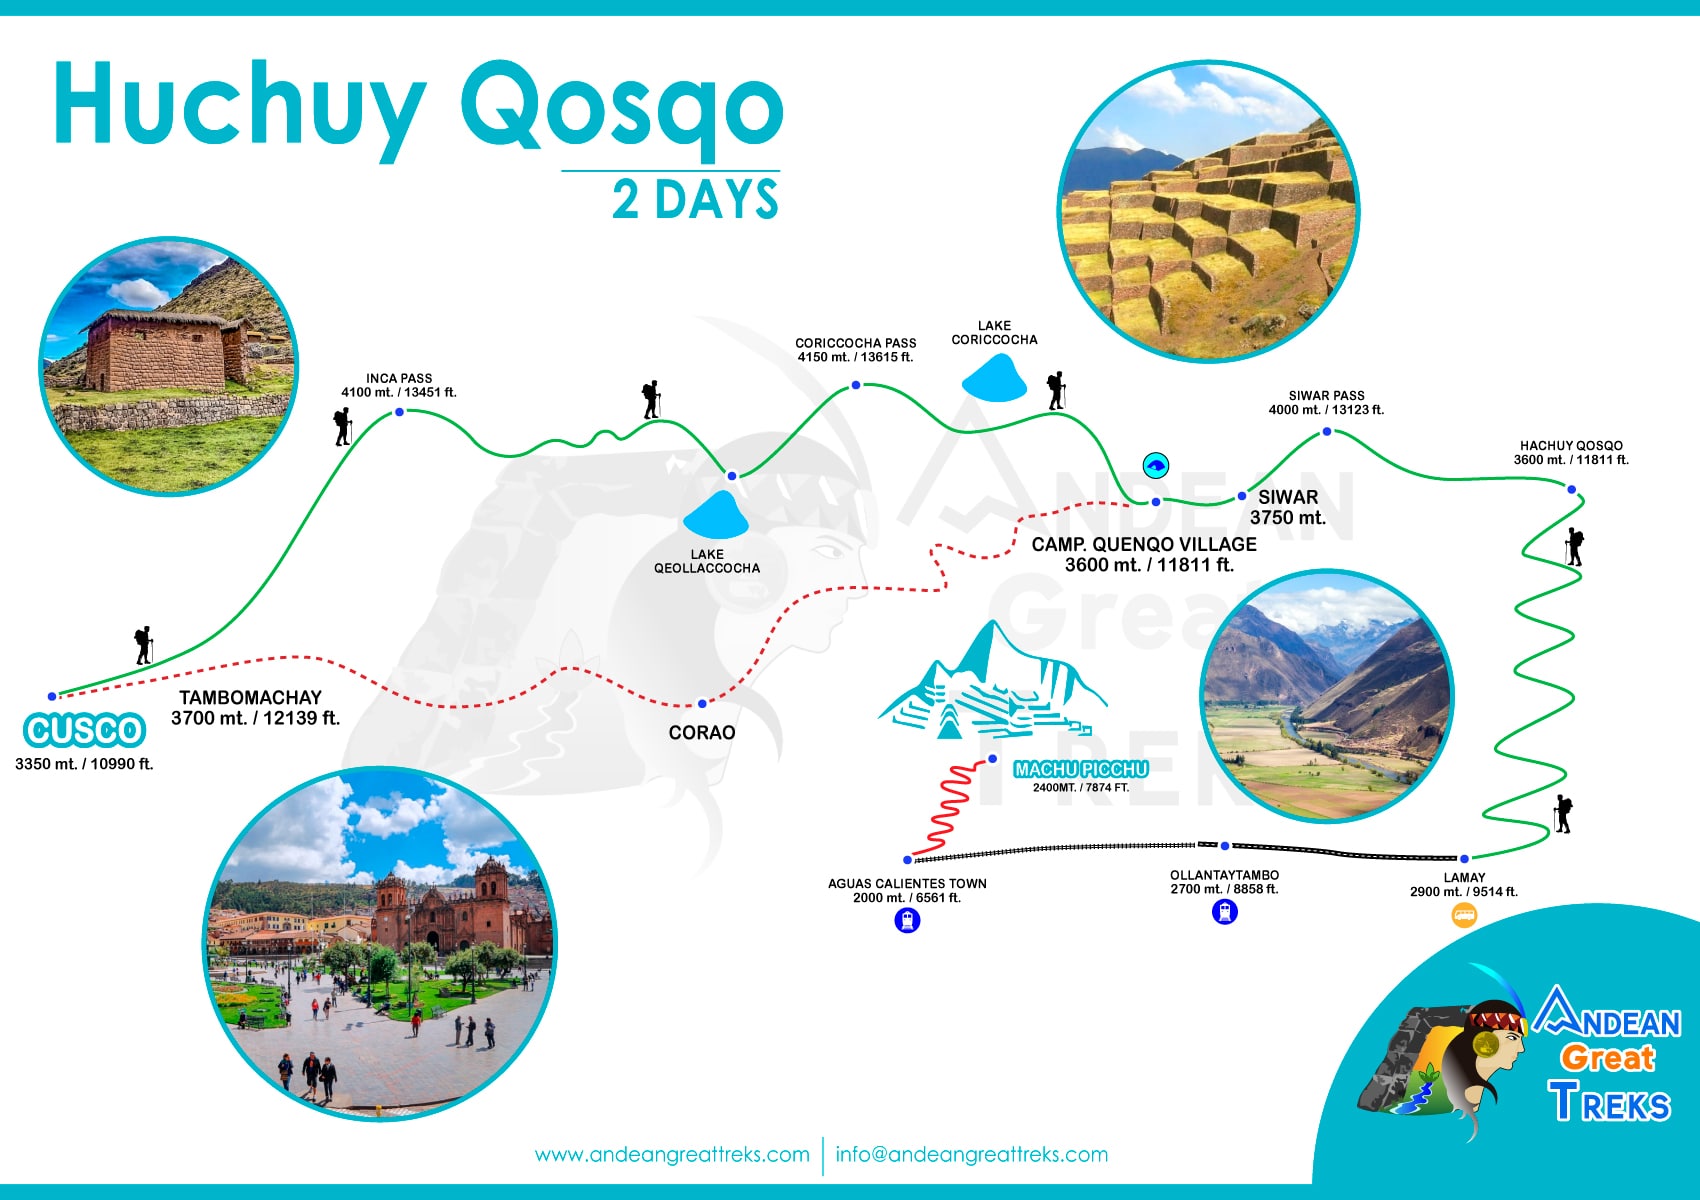 huchuy qosqo trek by andean great treks